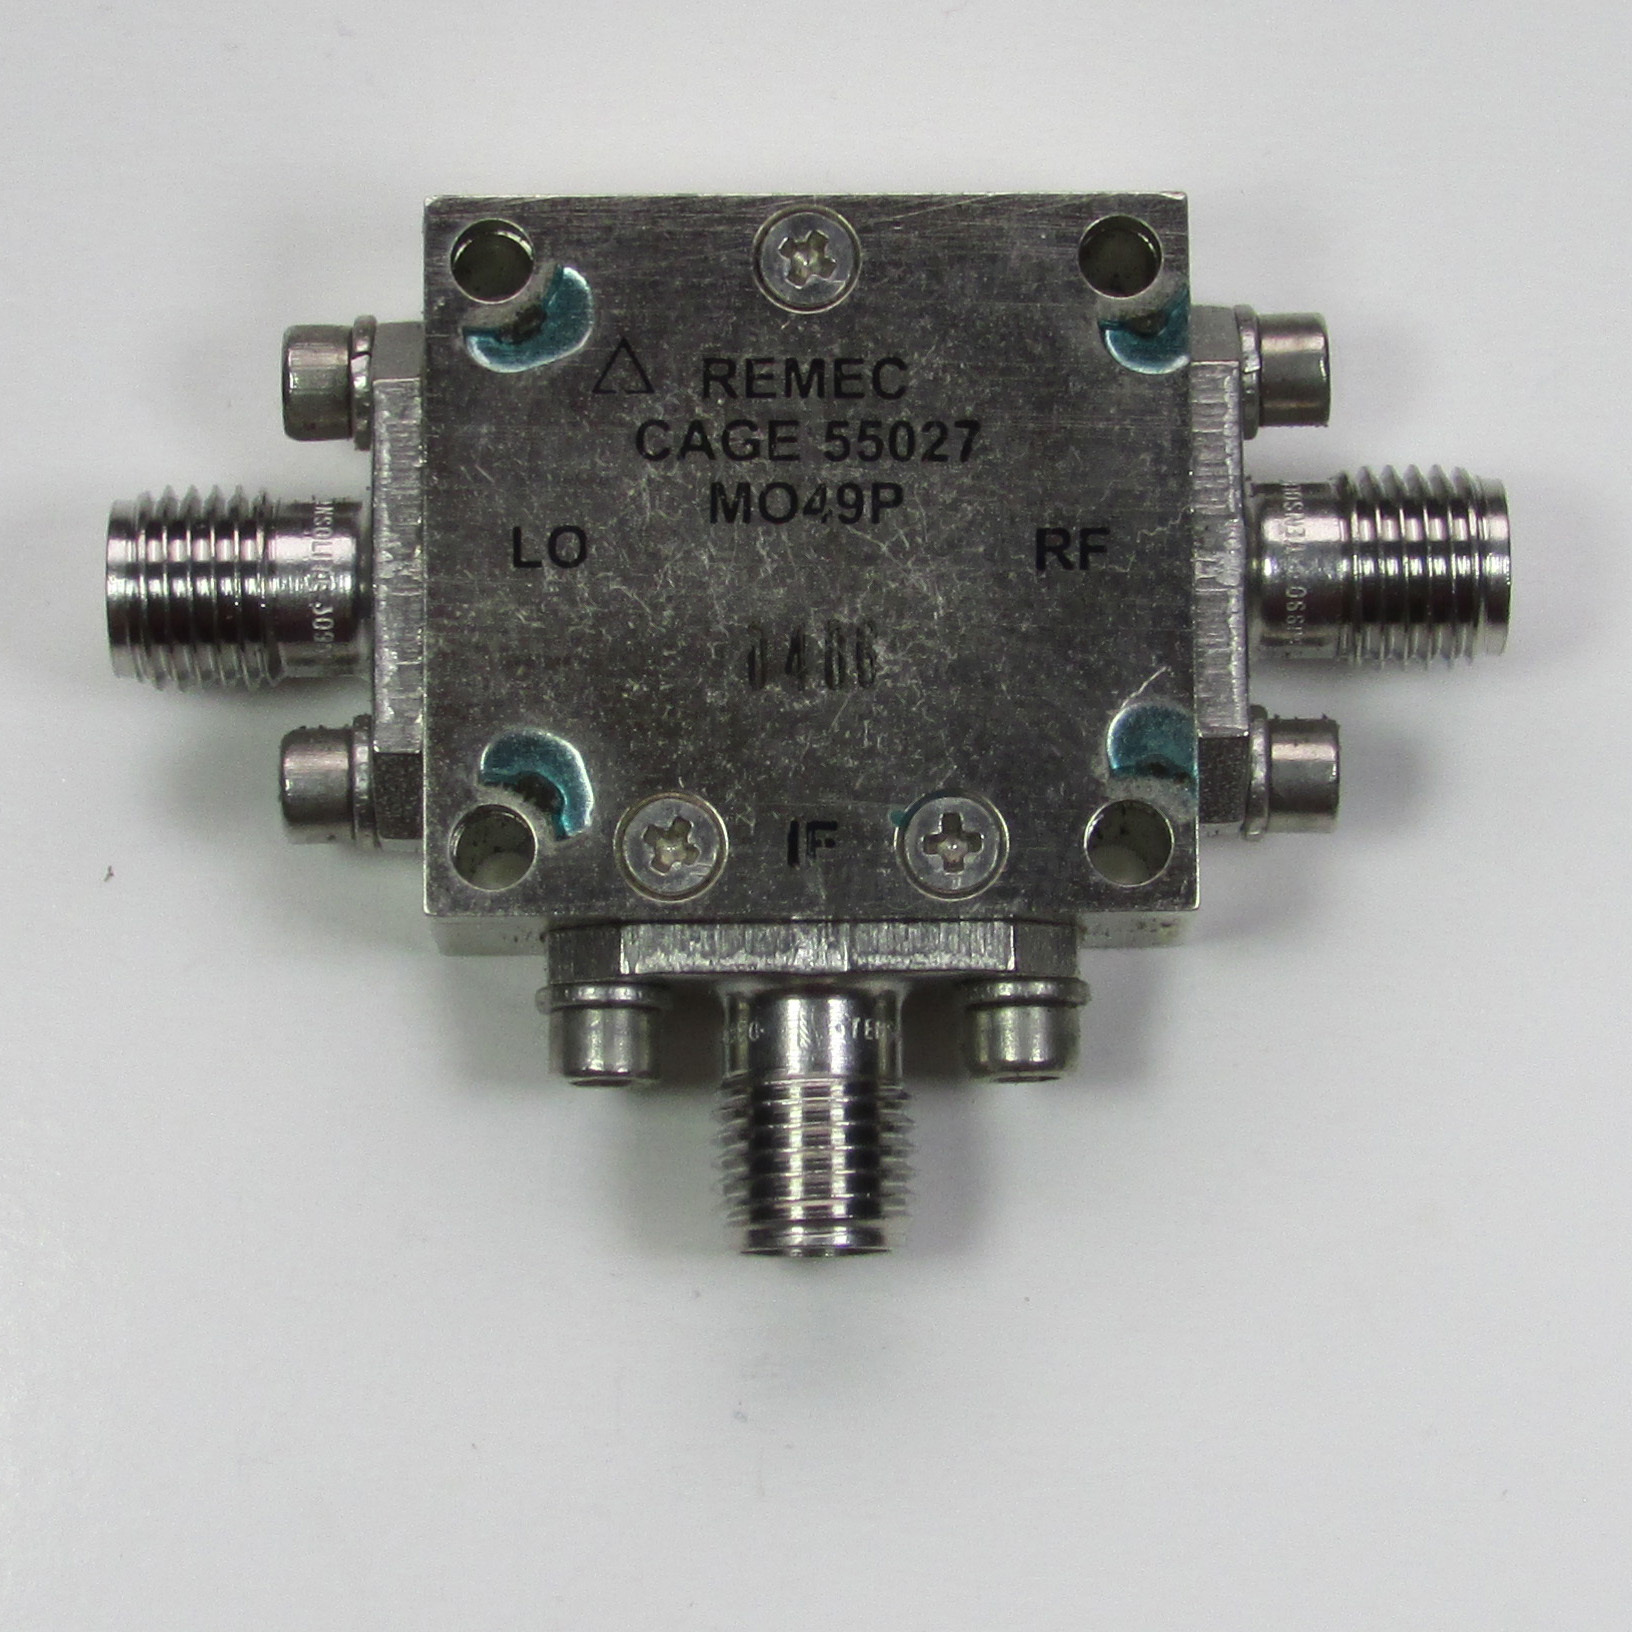 REMEC MO49P 4-8GHz SMA RF Microwave Coaxial Double Balanced Mixer